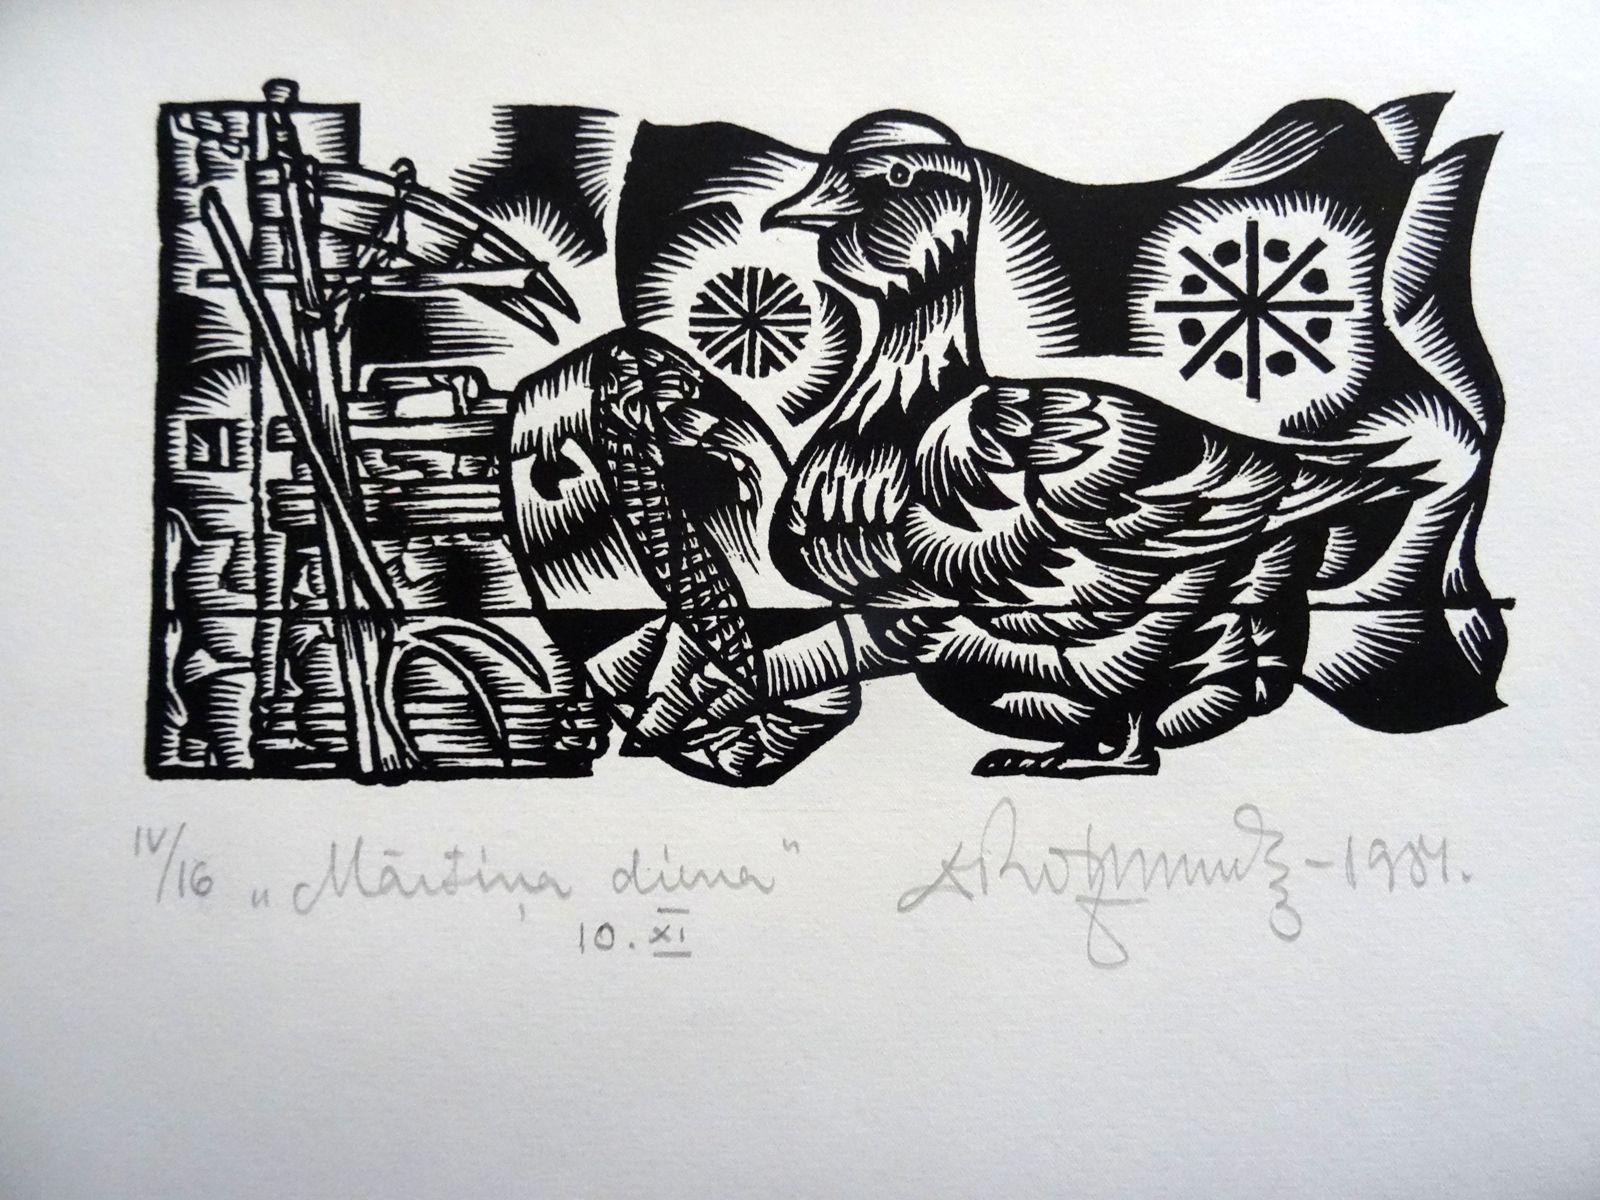 Martins-Tag. 1984. Papier, Linolschnitt, 25x34 cm